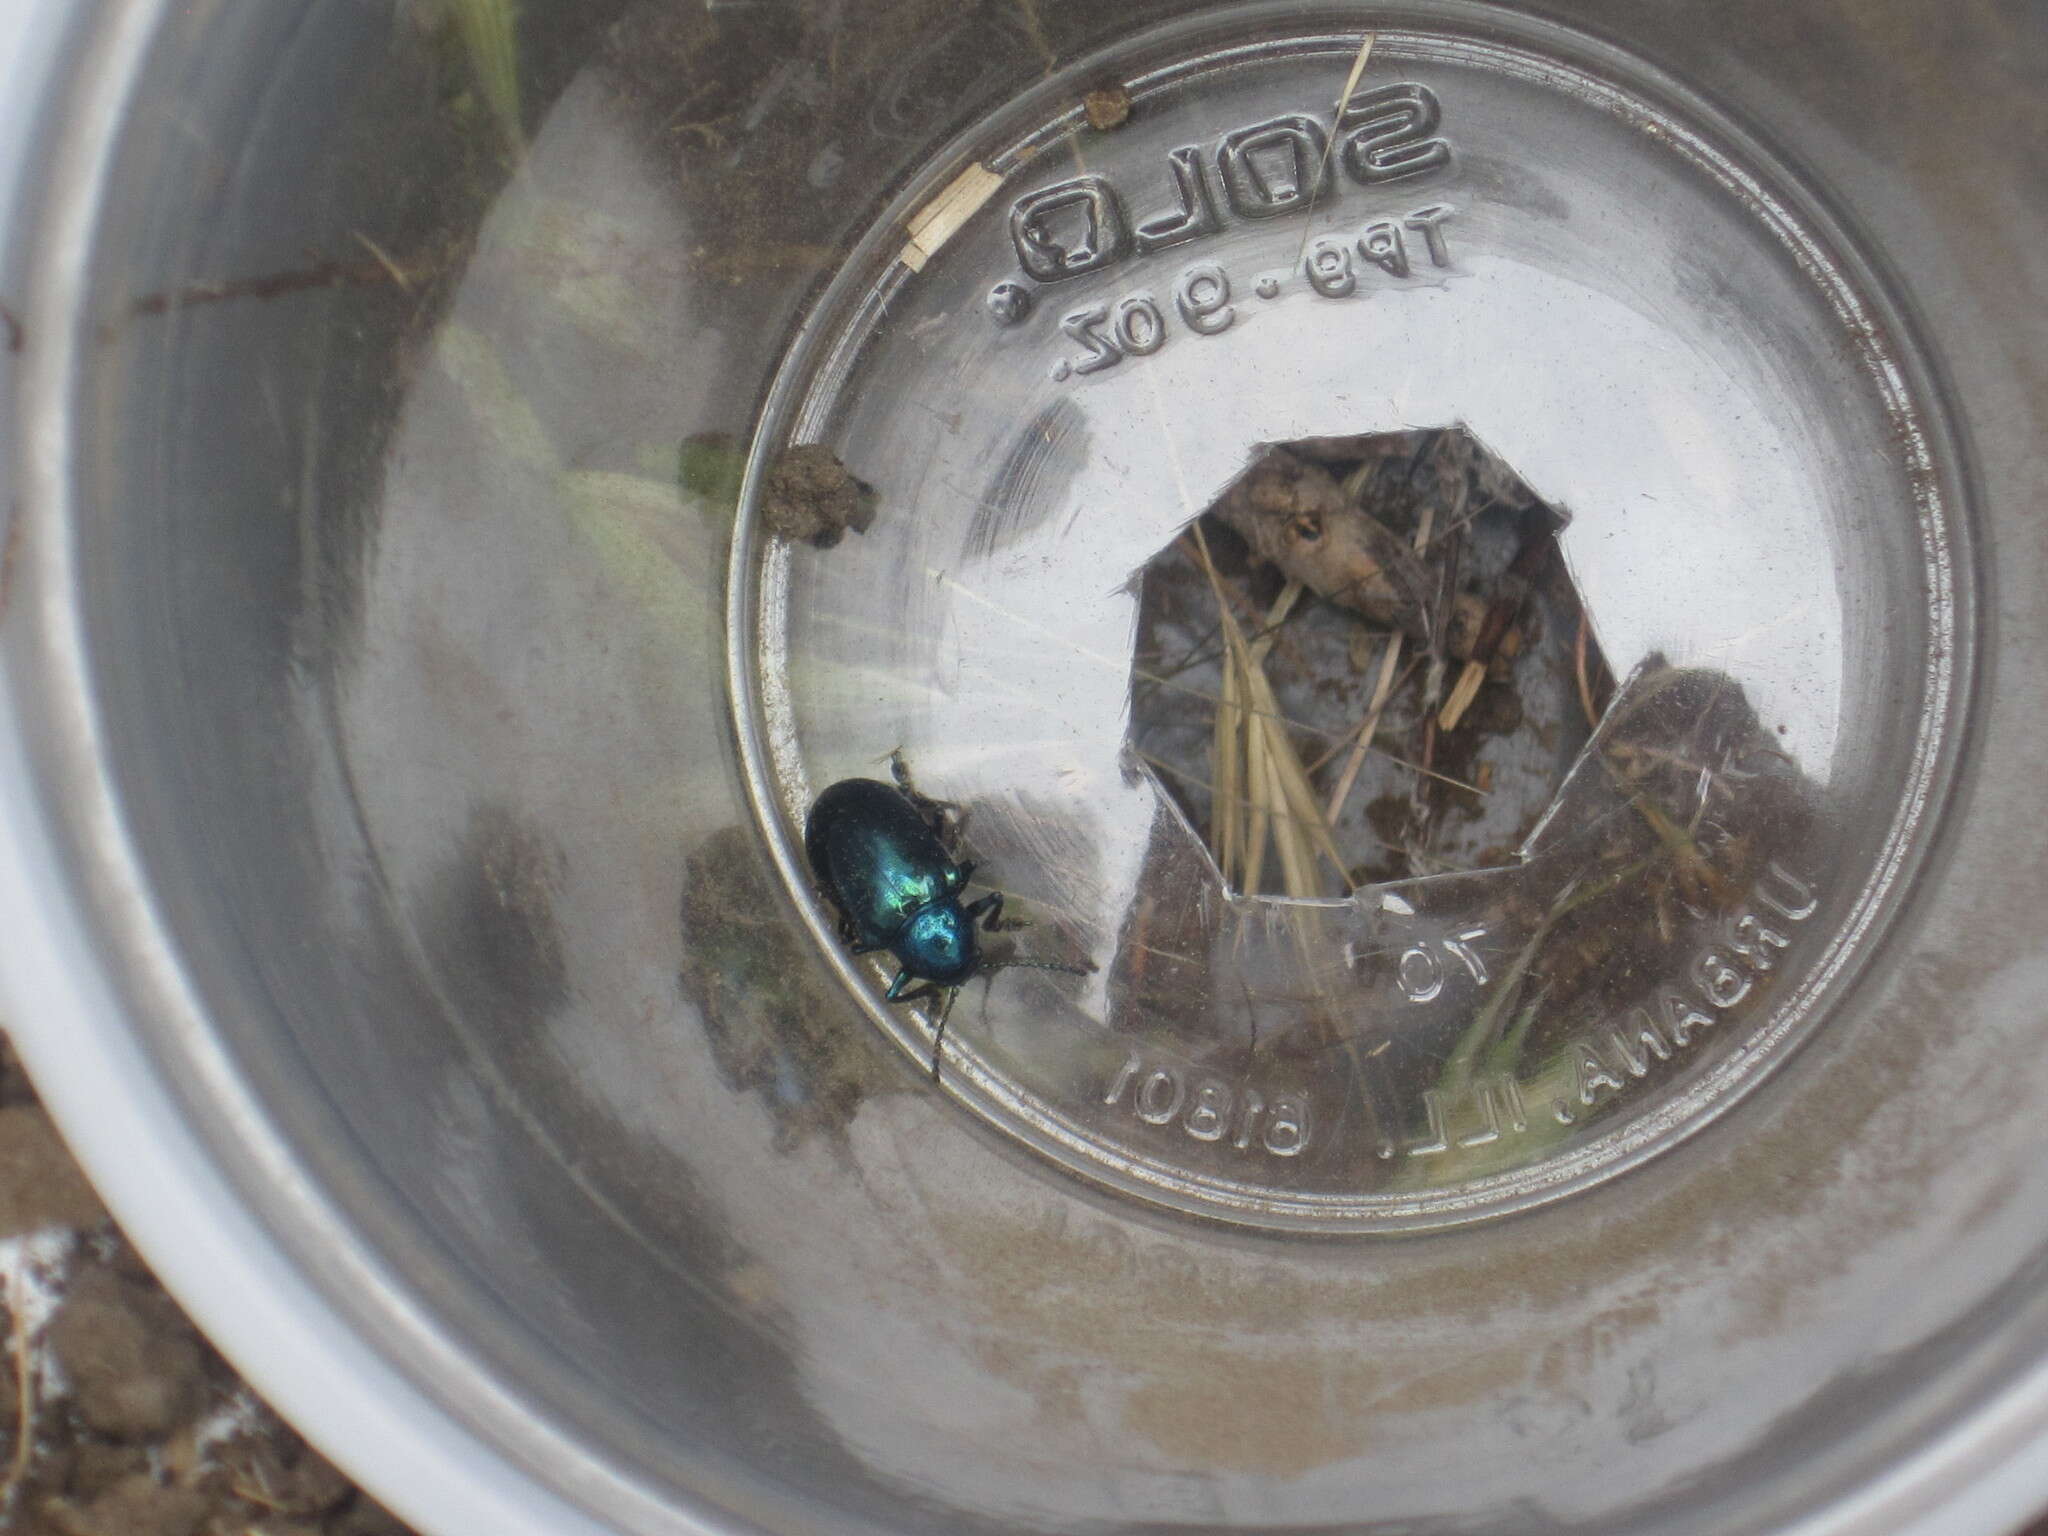 Image of Cobalt Milkweed Beetle